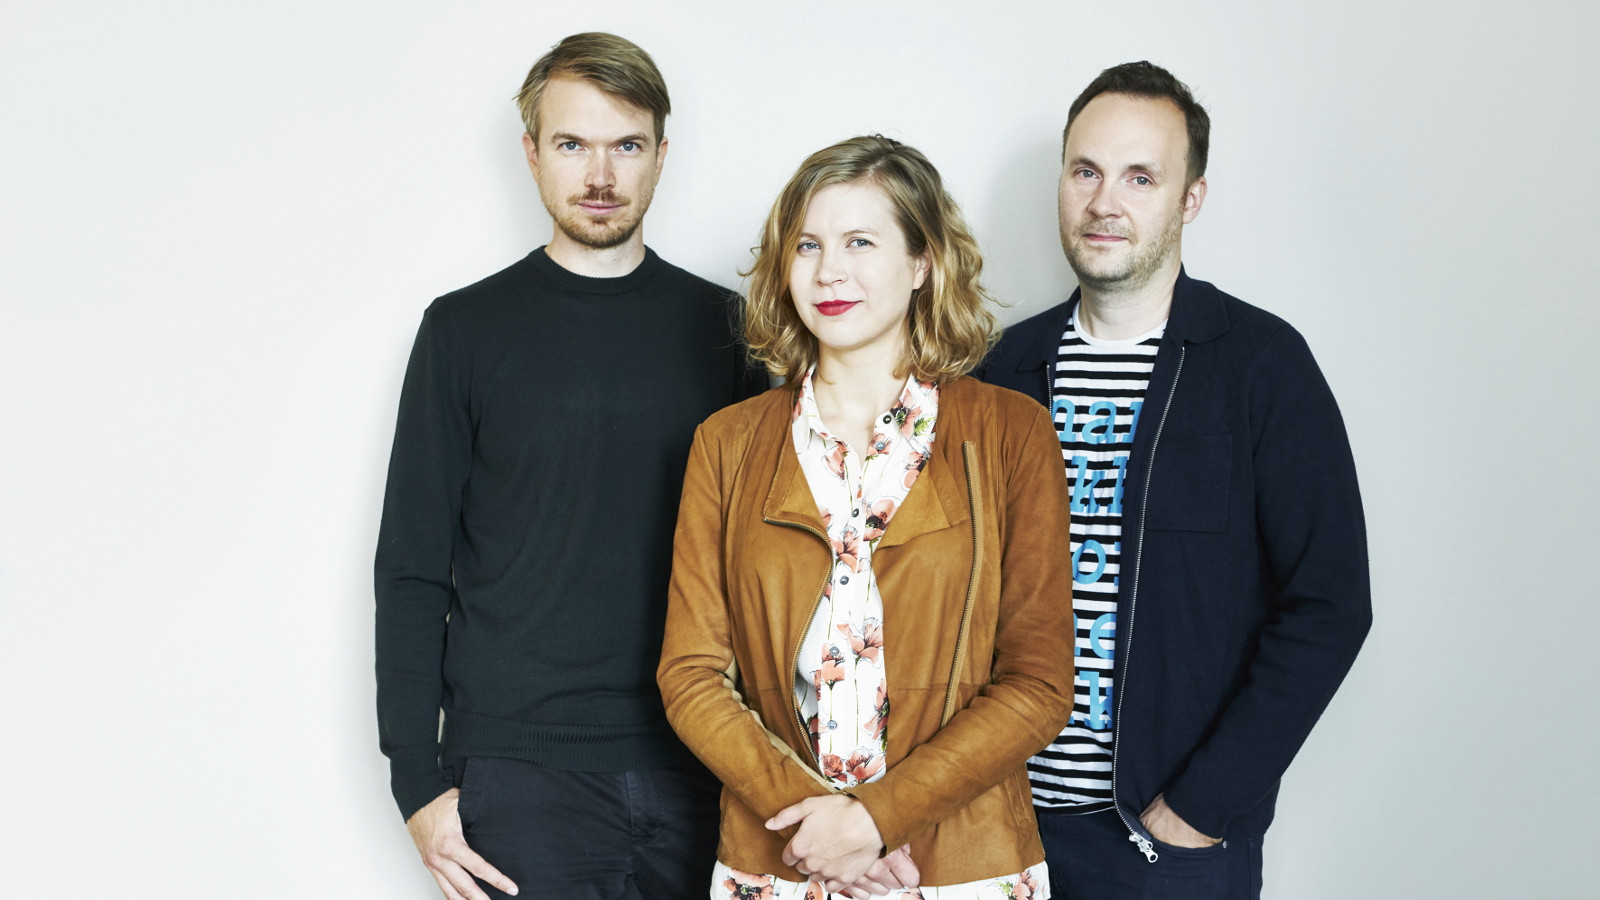 Kuvassa ovat Johannes Koponen, Minea Koskinen ja Jussi Pullinen rennoissa vaatteissa puolivartalokuvassa.